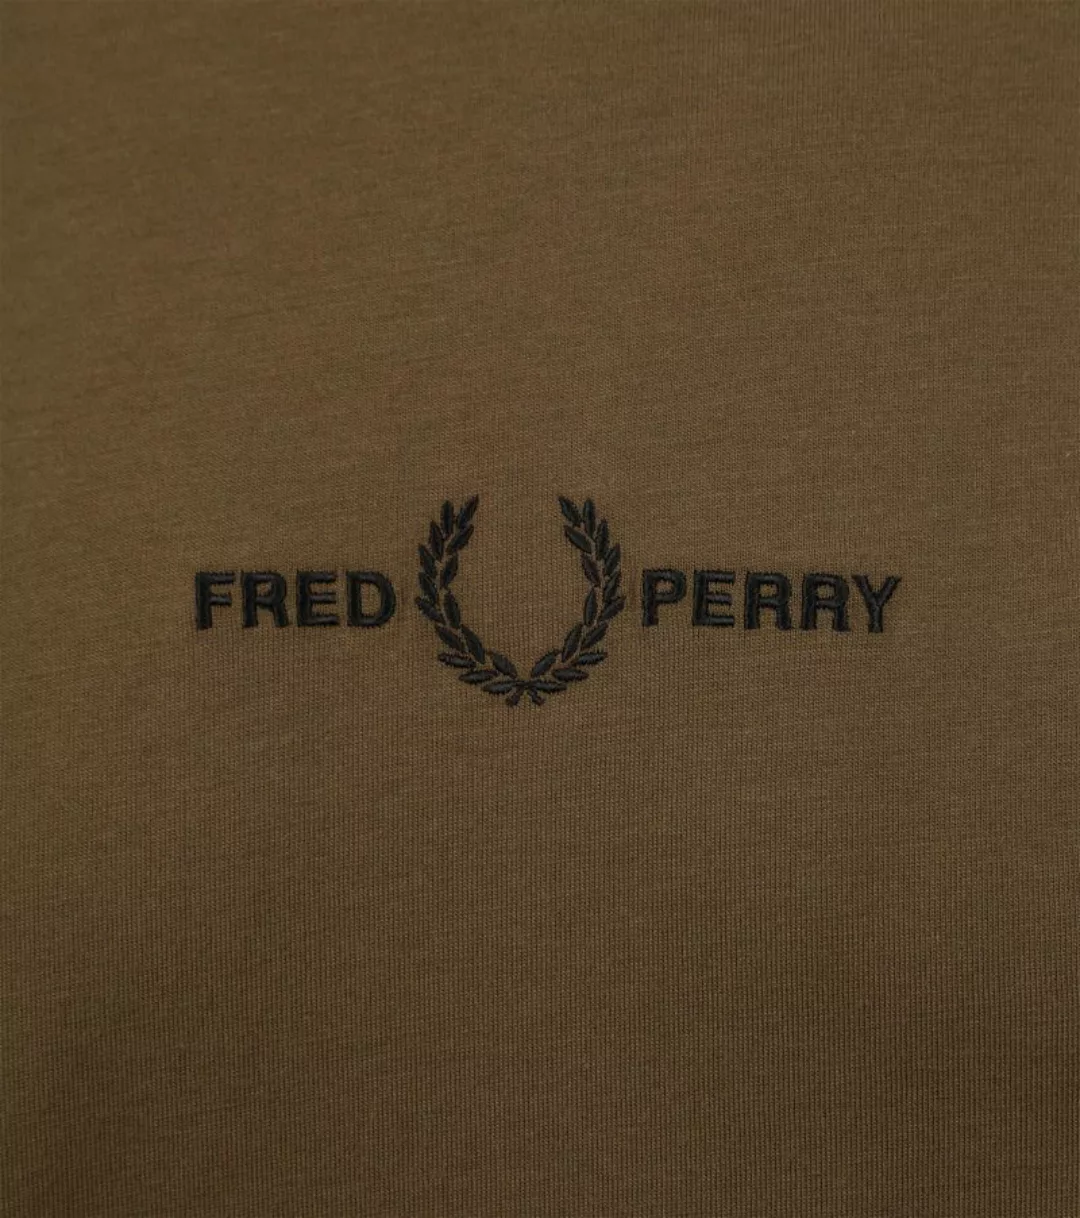 Fred Perry T-Shirt M4580 Dunkelgrün - Größe M günstig online kaufen